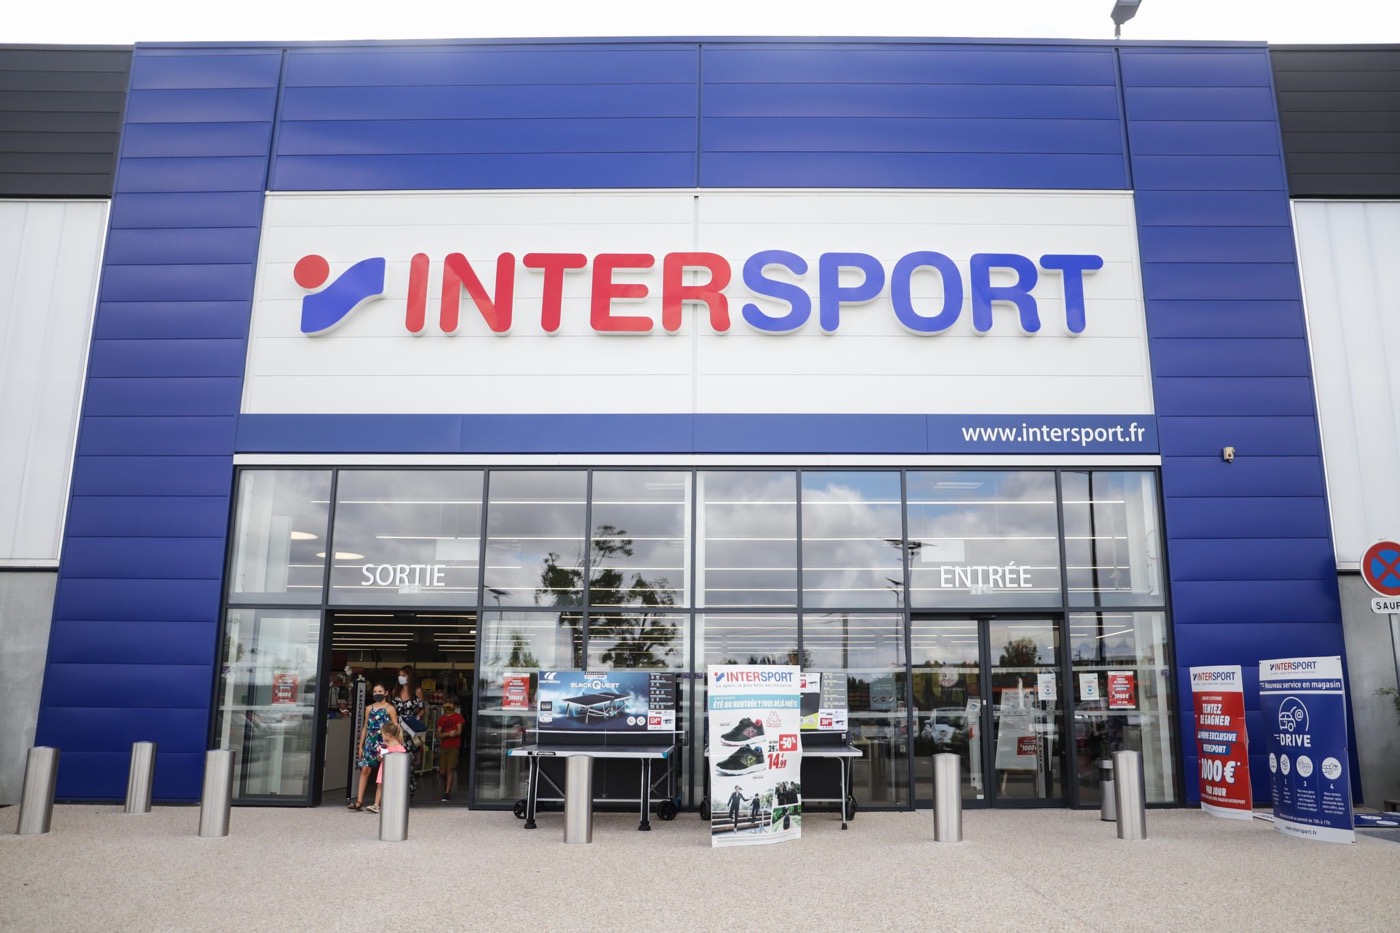 Intersport hacked: employee data was stolen